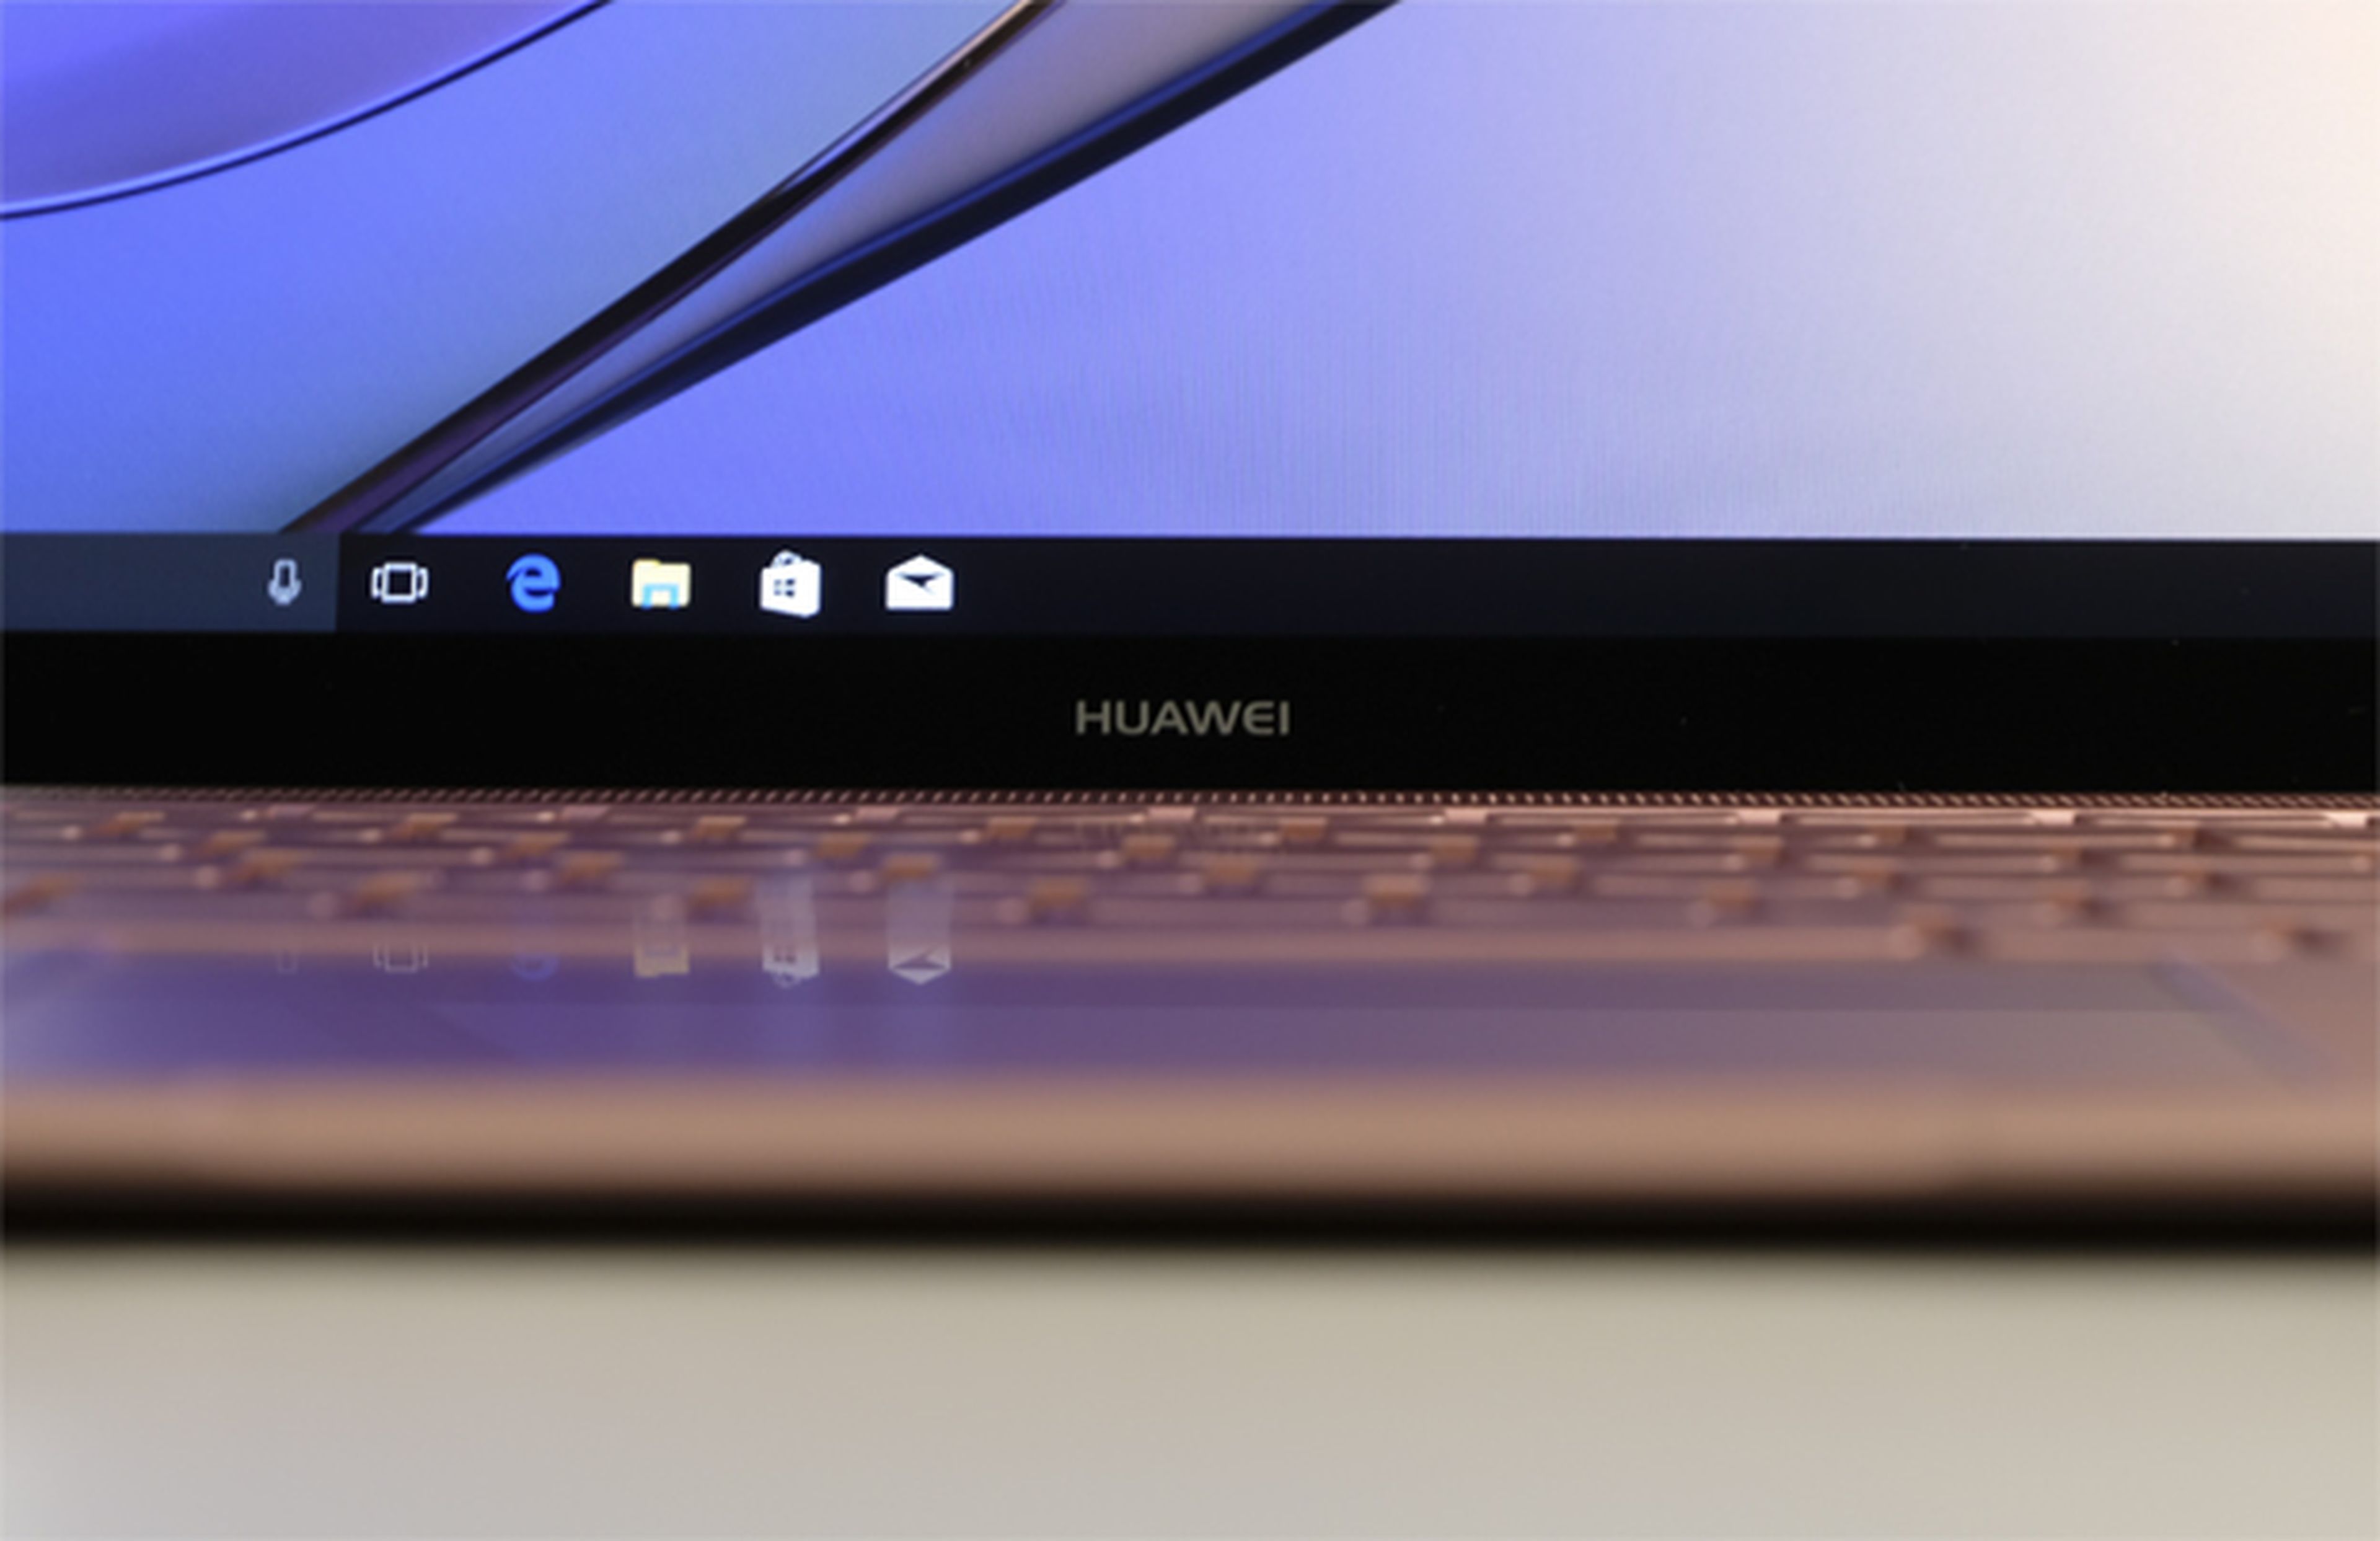 La pantalla es otra de las características llamativas del Huawei MateBook X